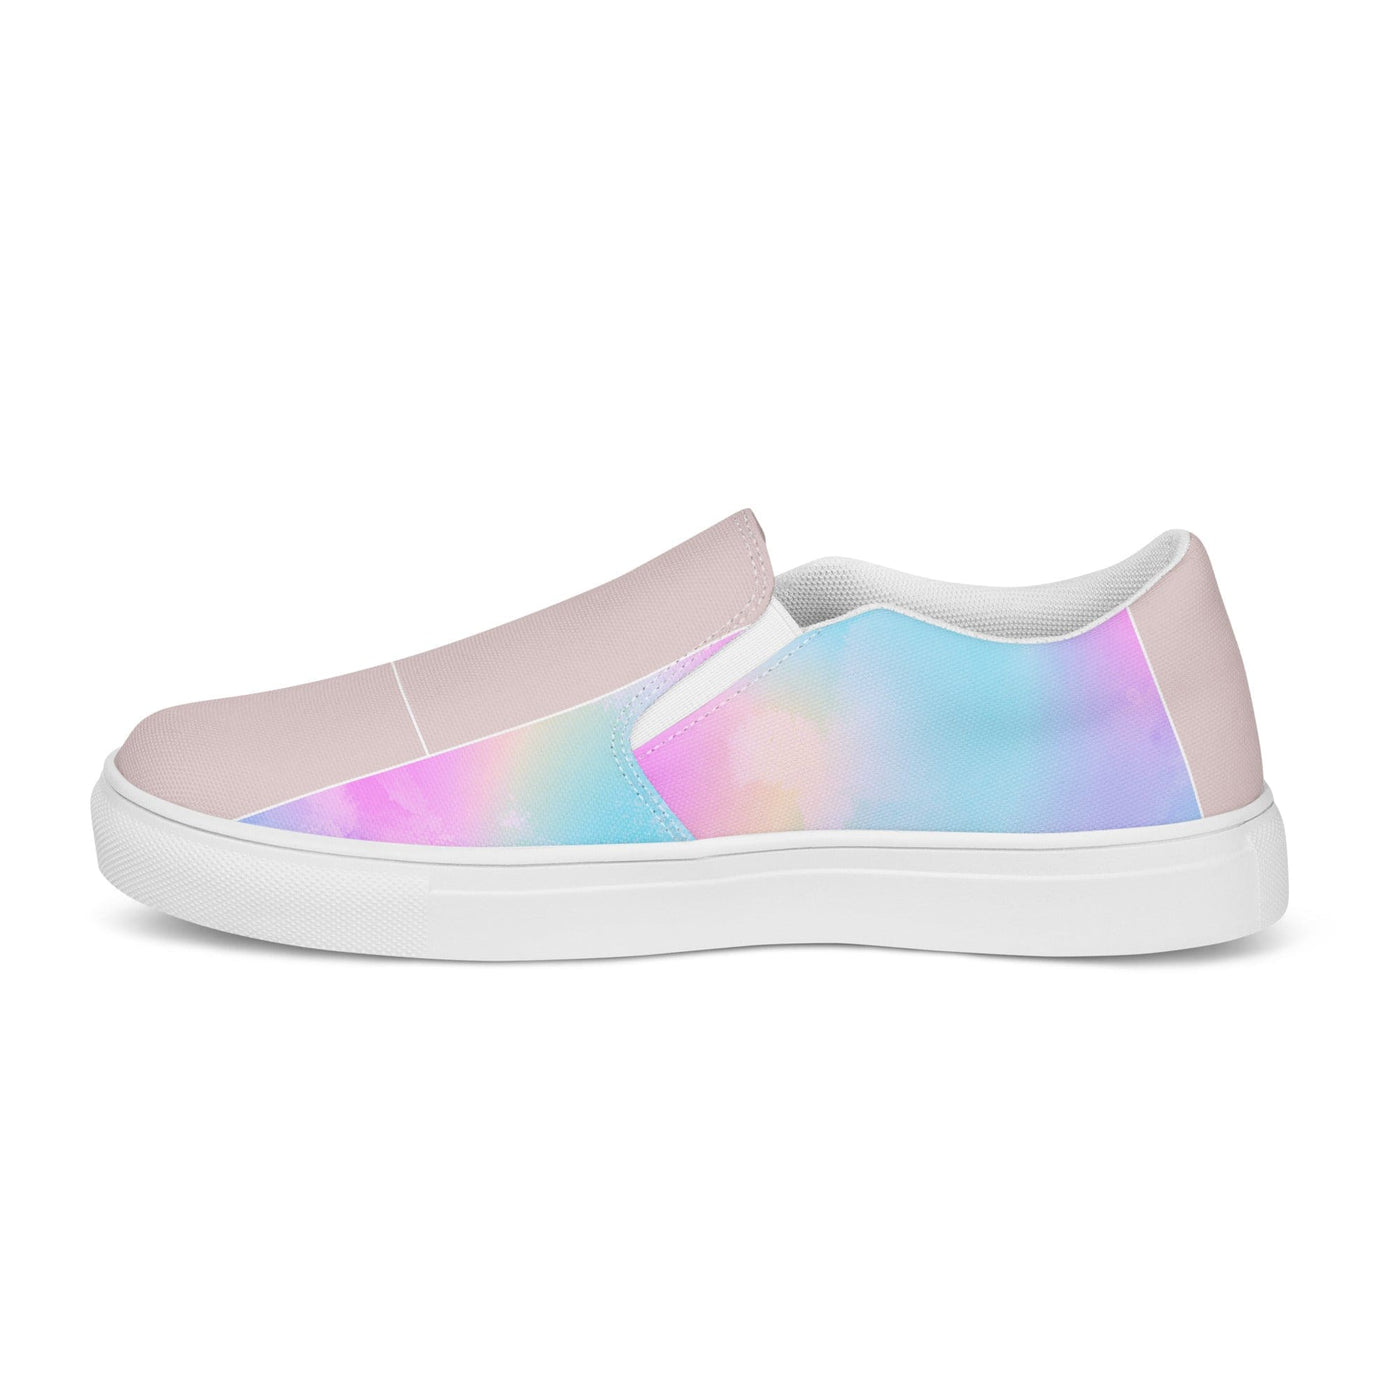 Women’s Slip-on Canvas Shoes Pastel Colorblock Watercolor Illustration